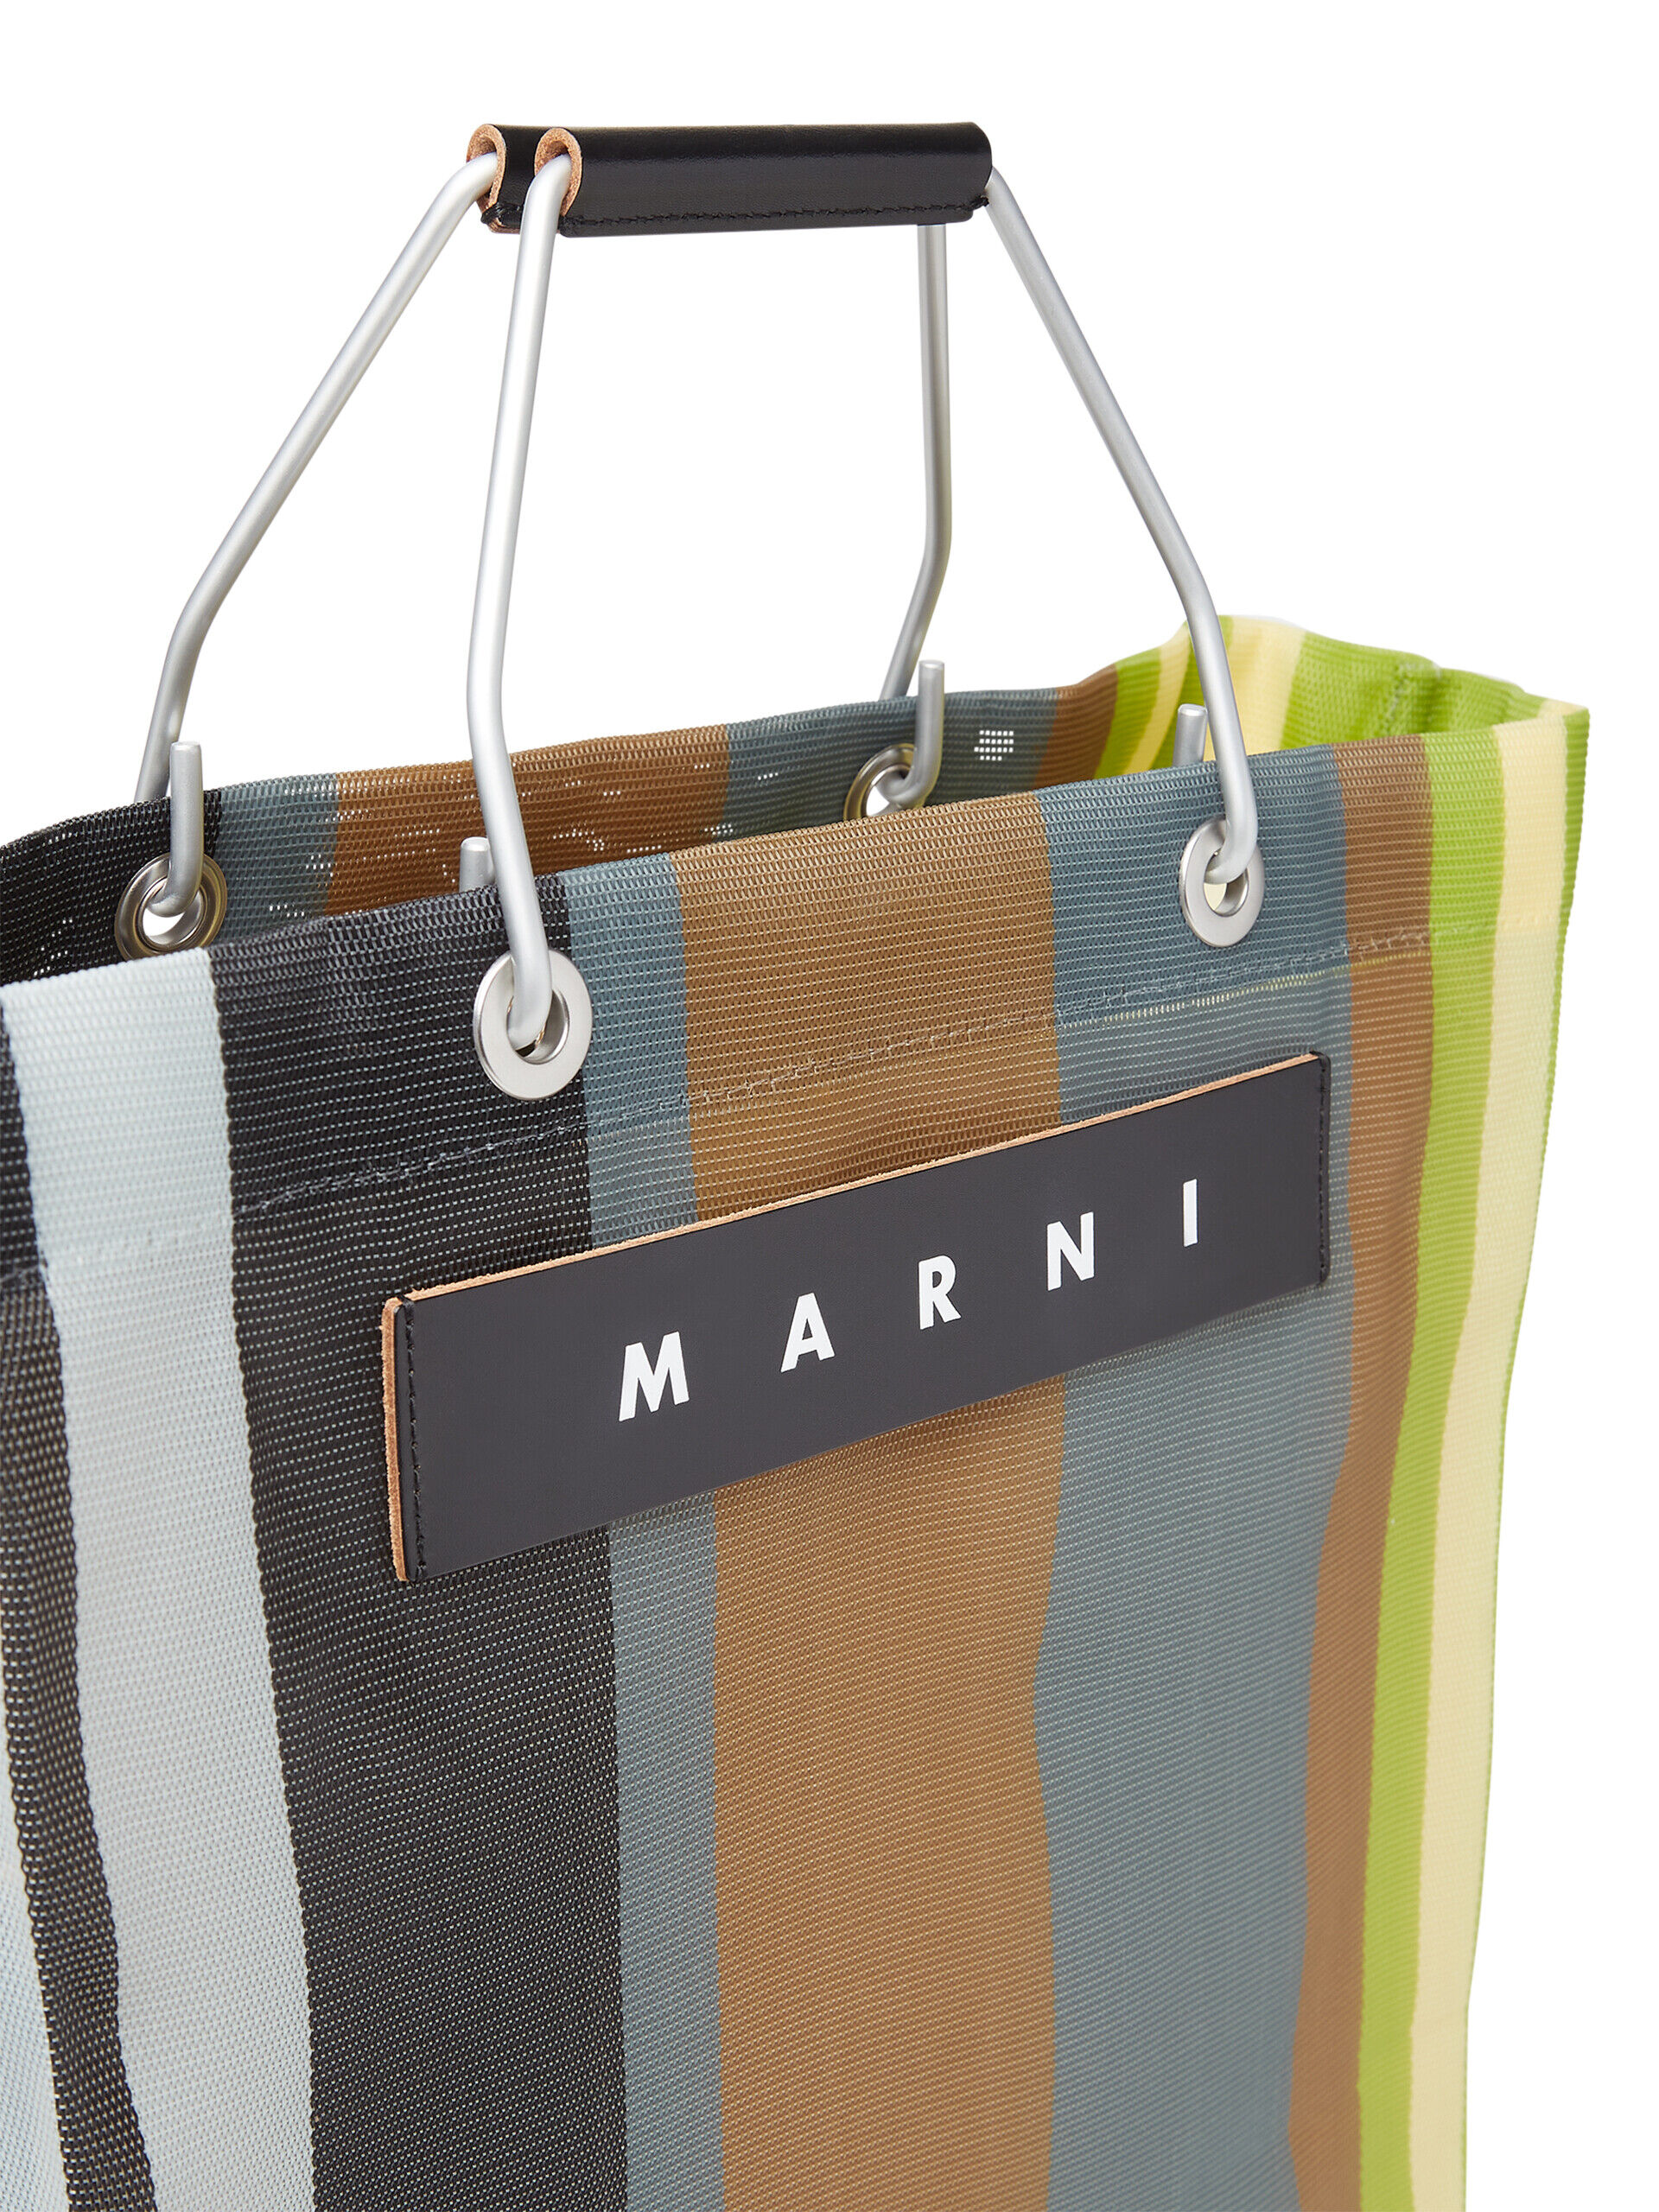 エクリュ(ソフトベージュ) MARNI MARKET STRIPE BAG | Marni